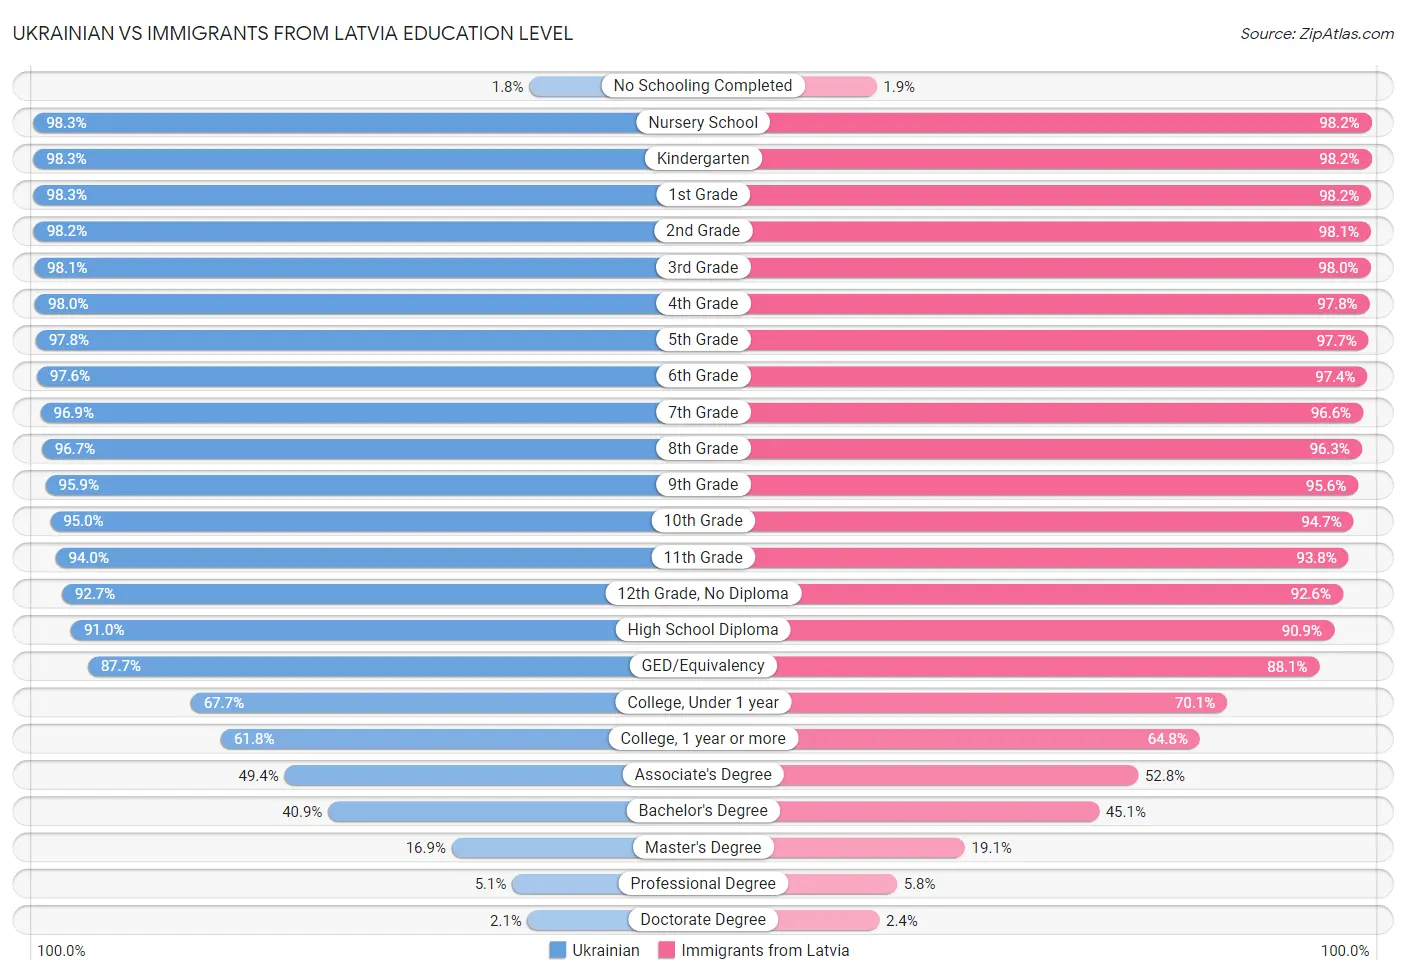 Ukrainian vs Immigrants from Latvia Education Level